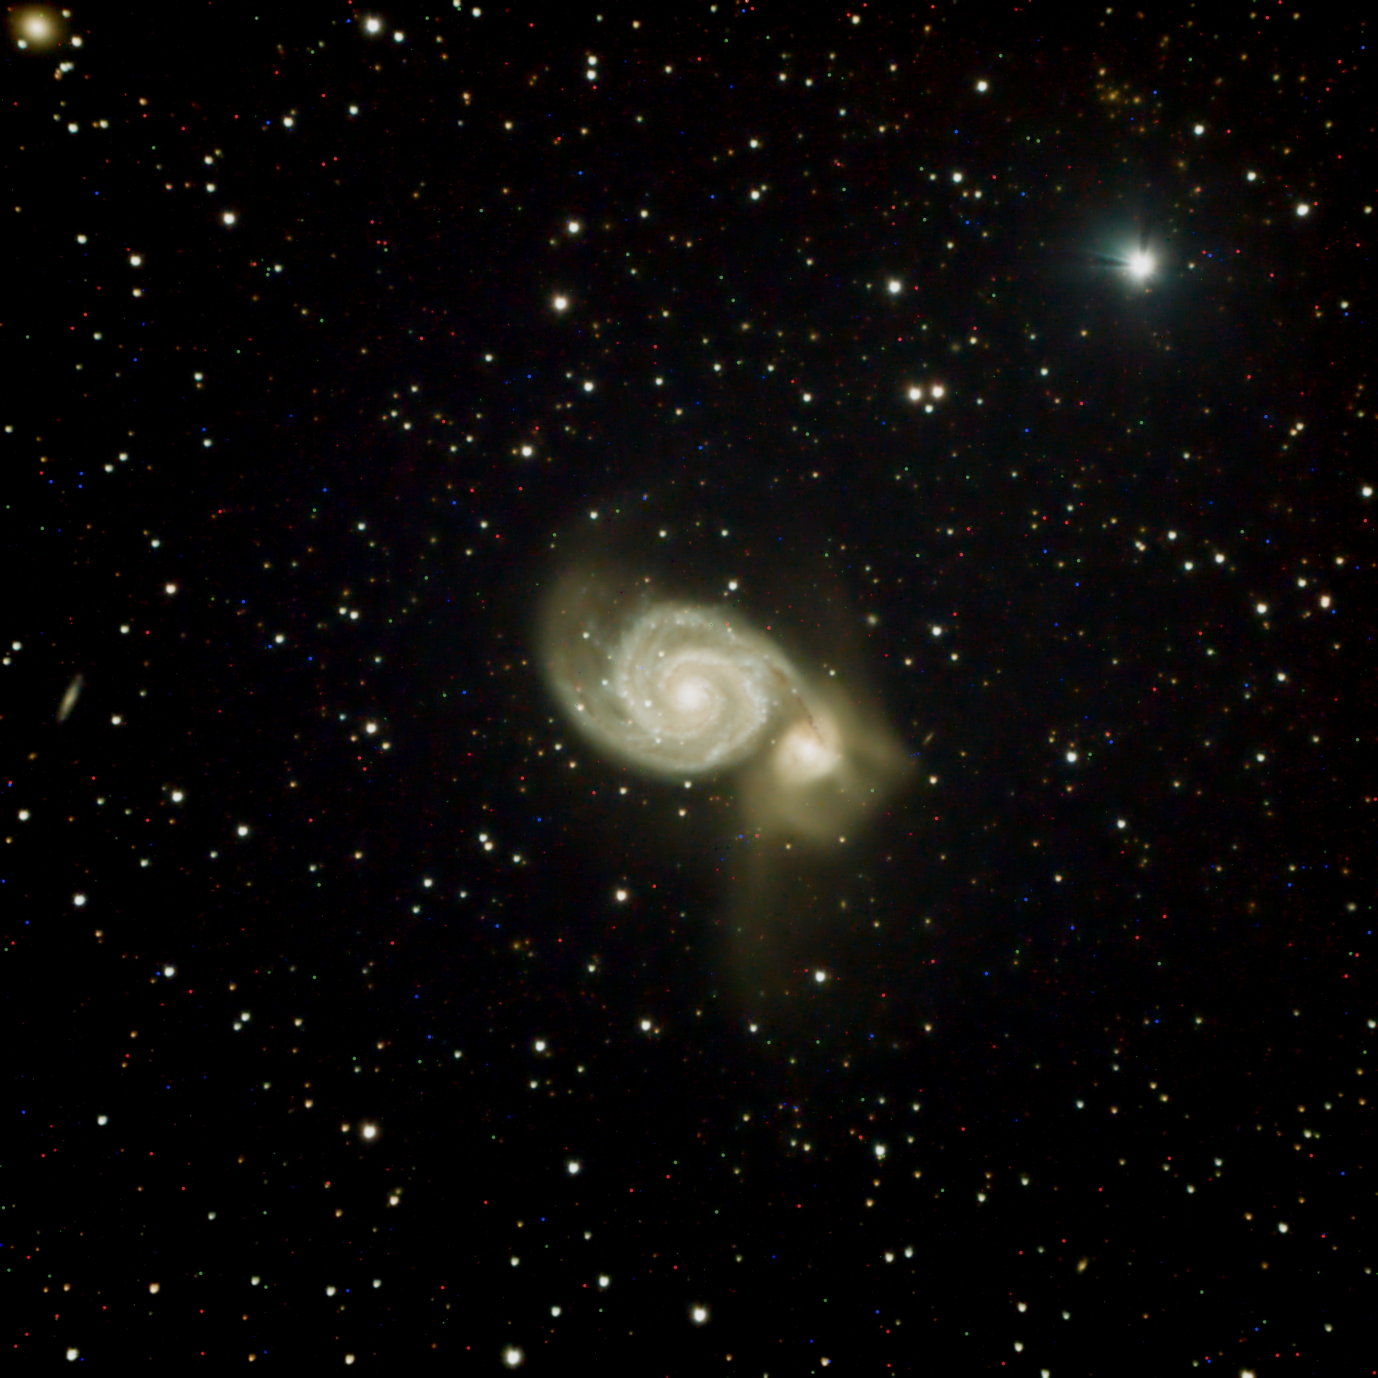 M51 - David Ibarra